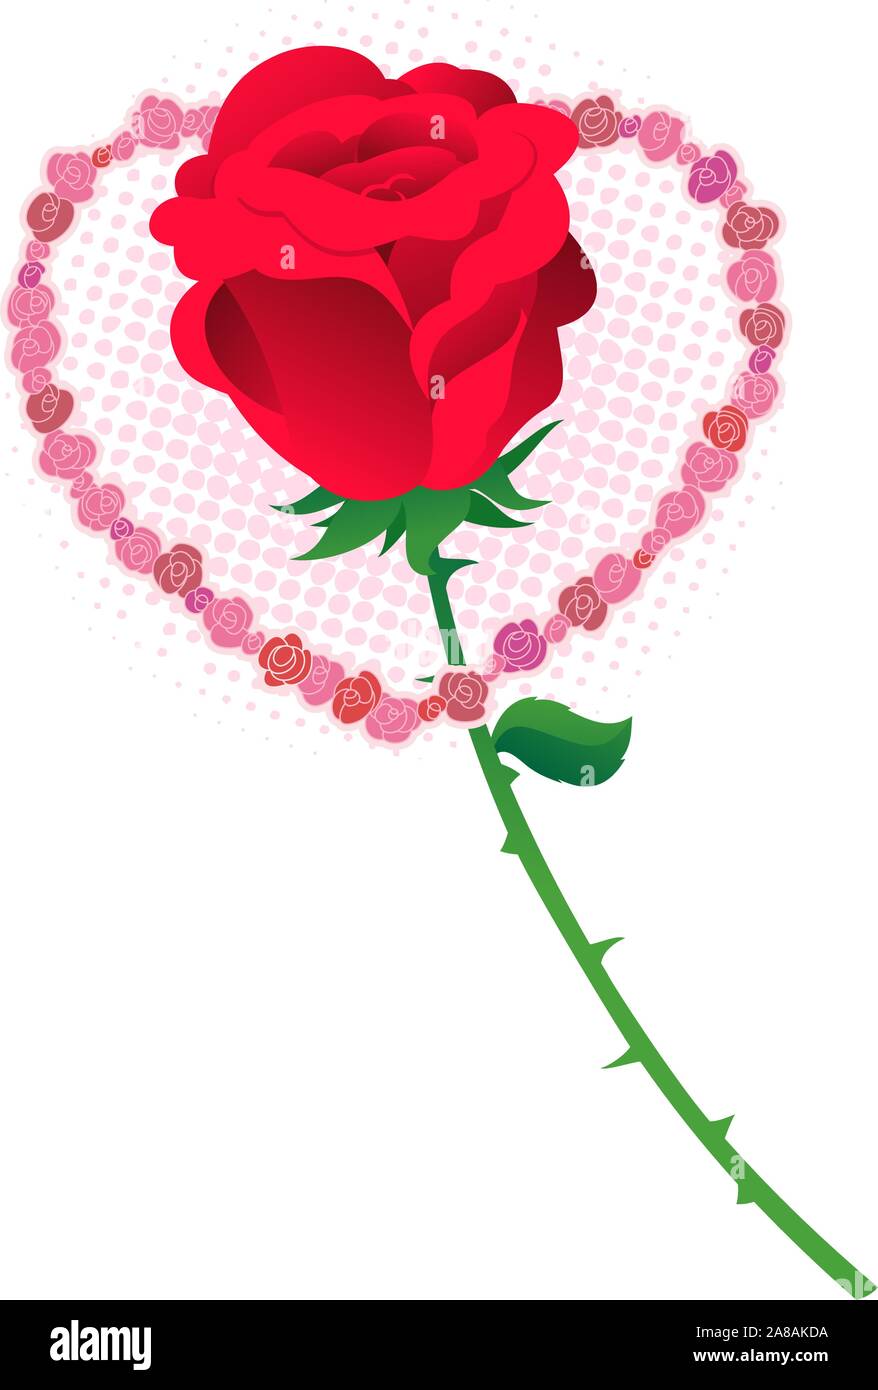 Love Red rose inside a heart frame Stock Vector